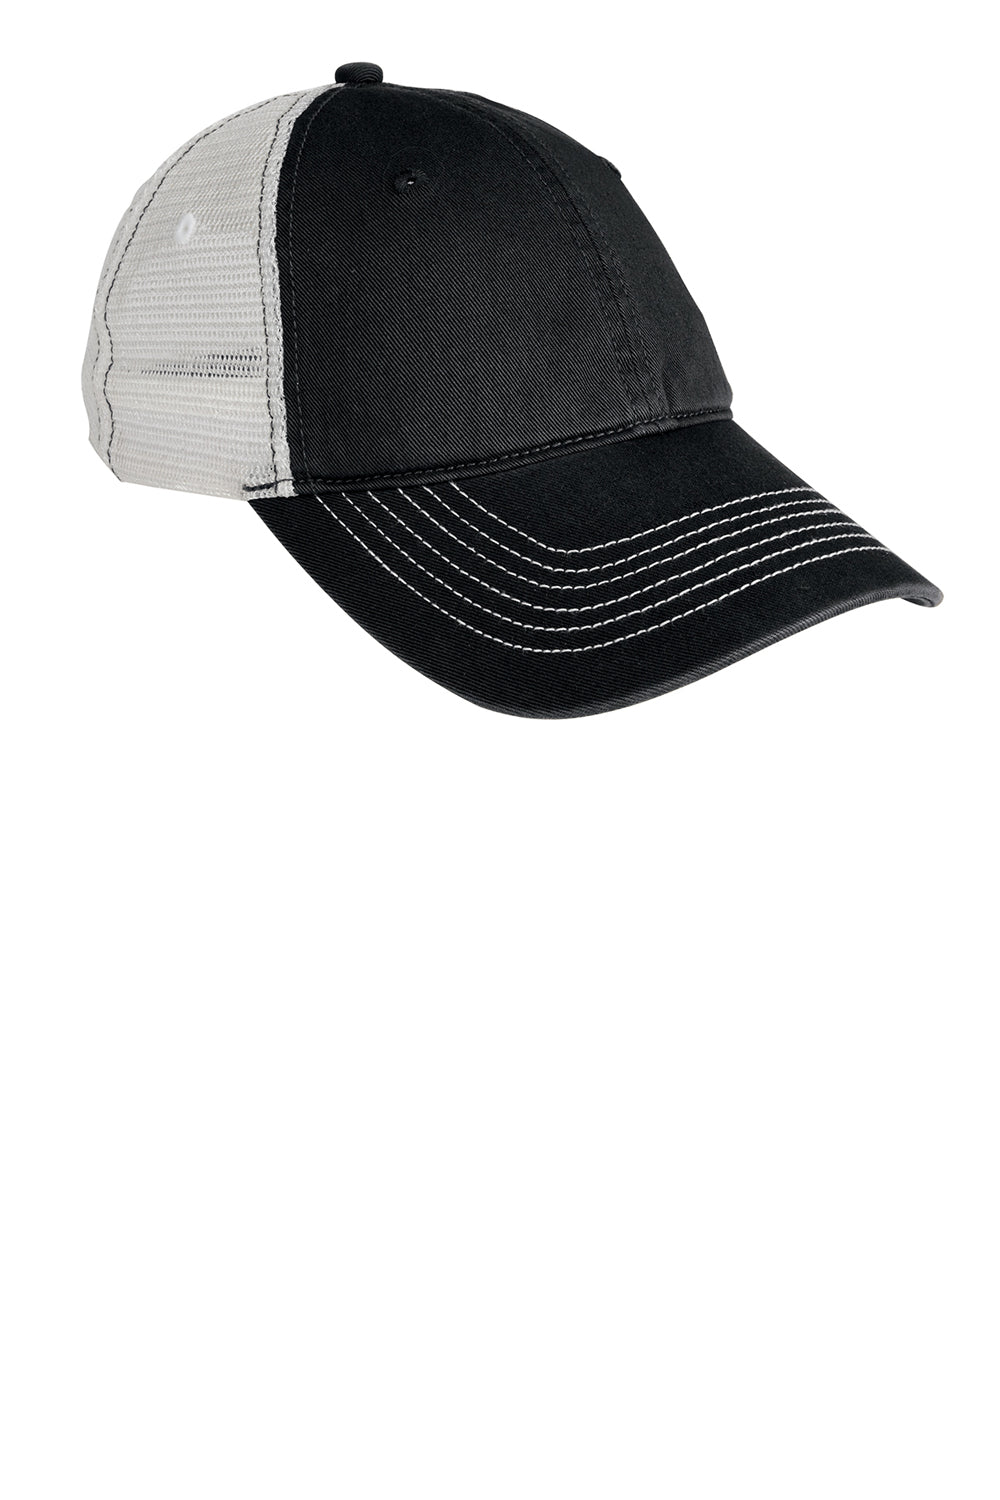 District DT607 Mens Adjustable Hat Black Front